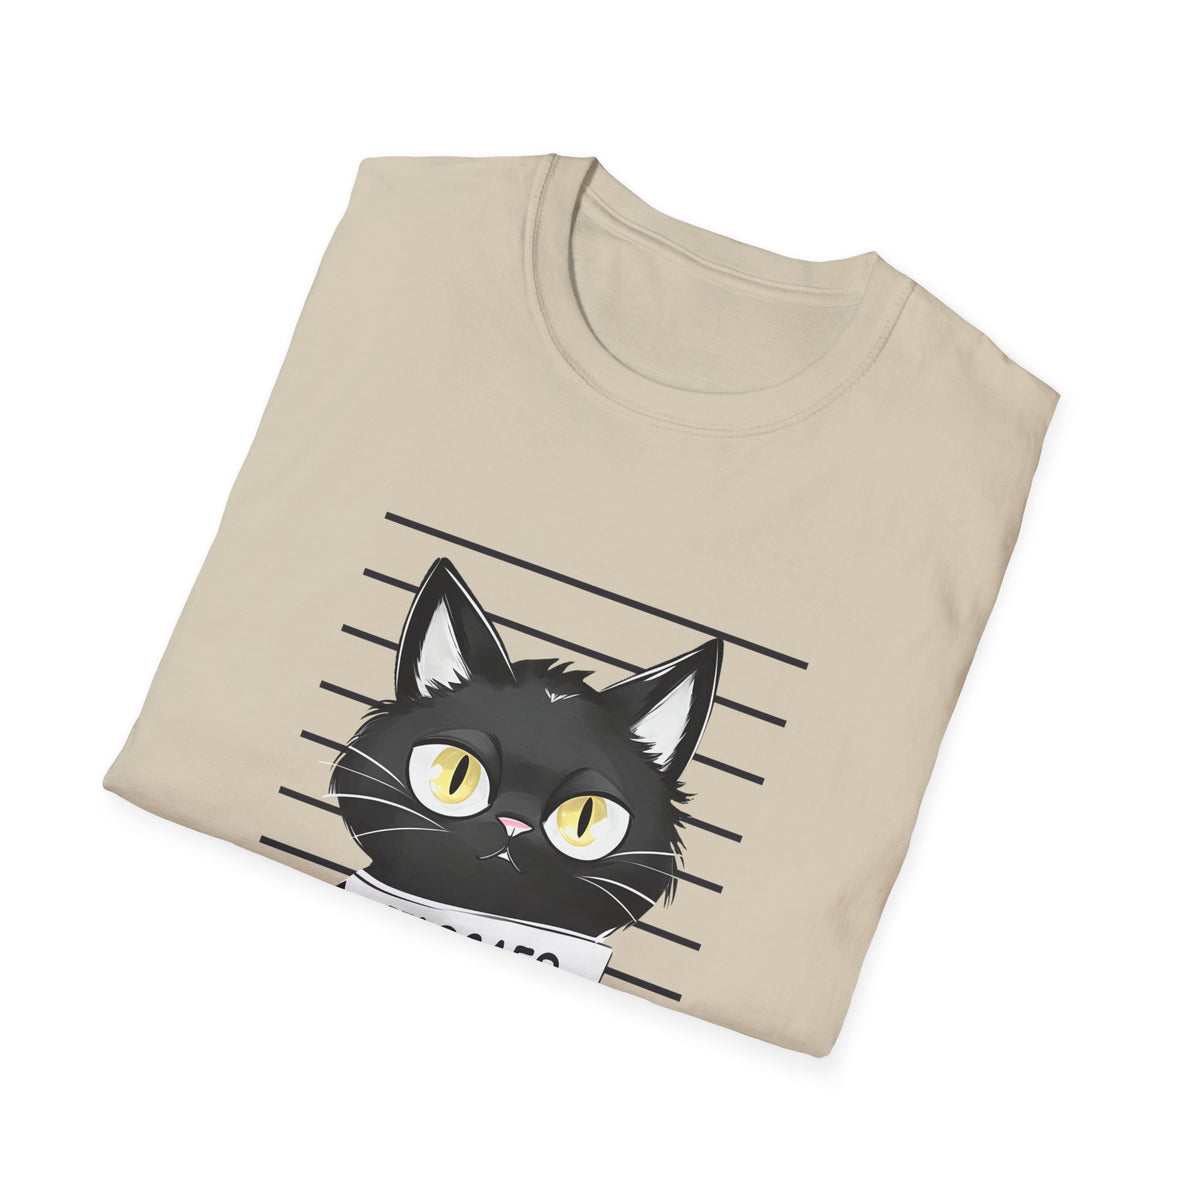 Bad Cattitude Unisex Softstyle T-Shirt